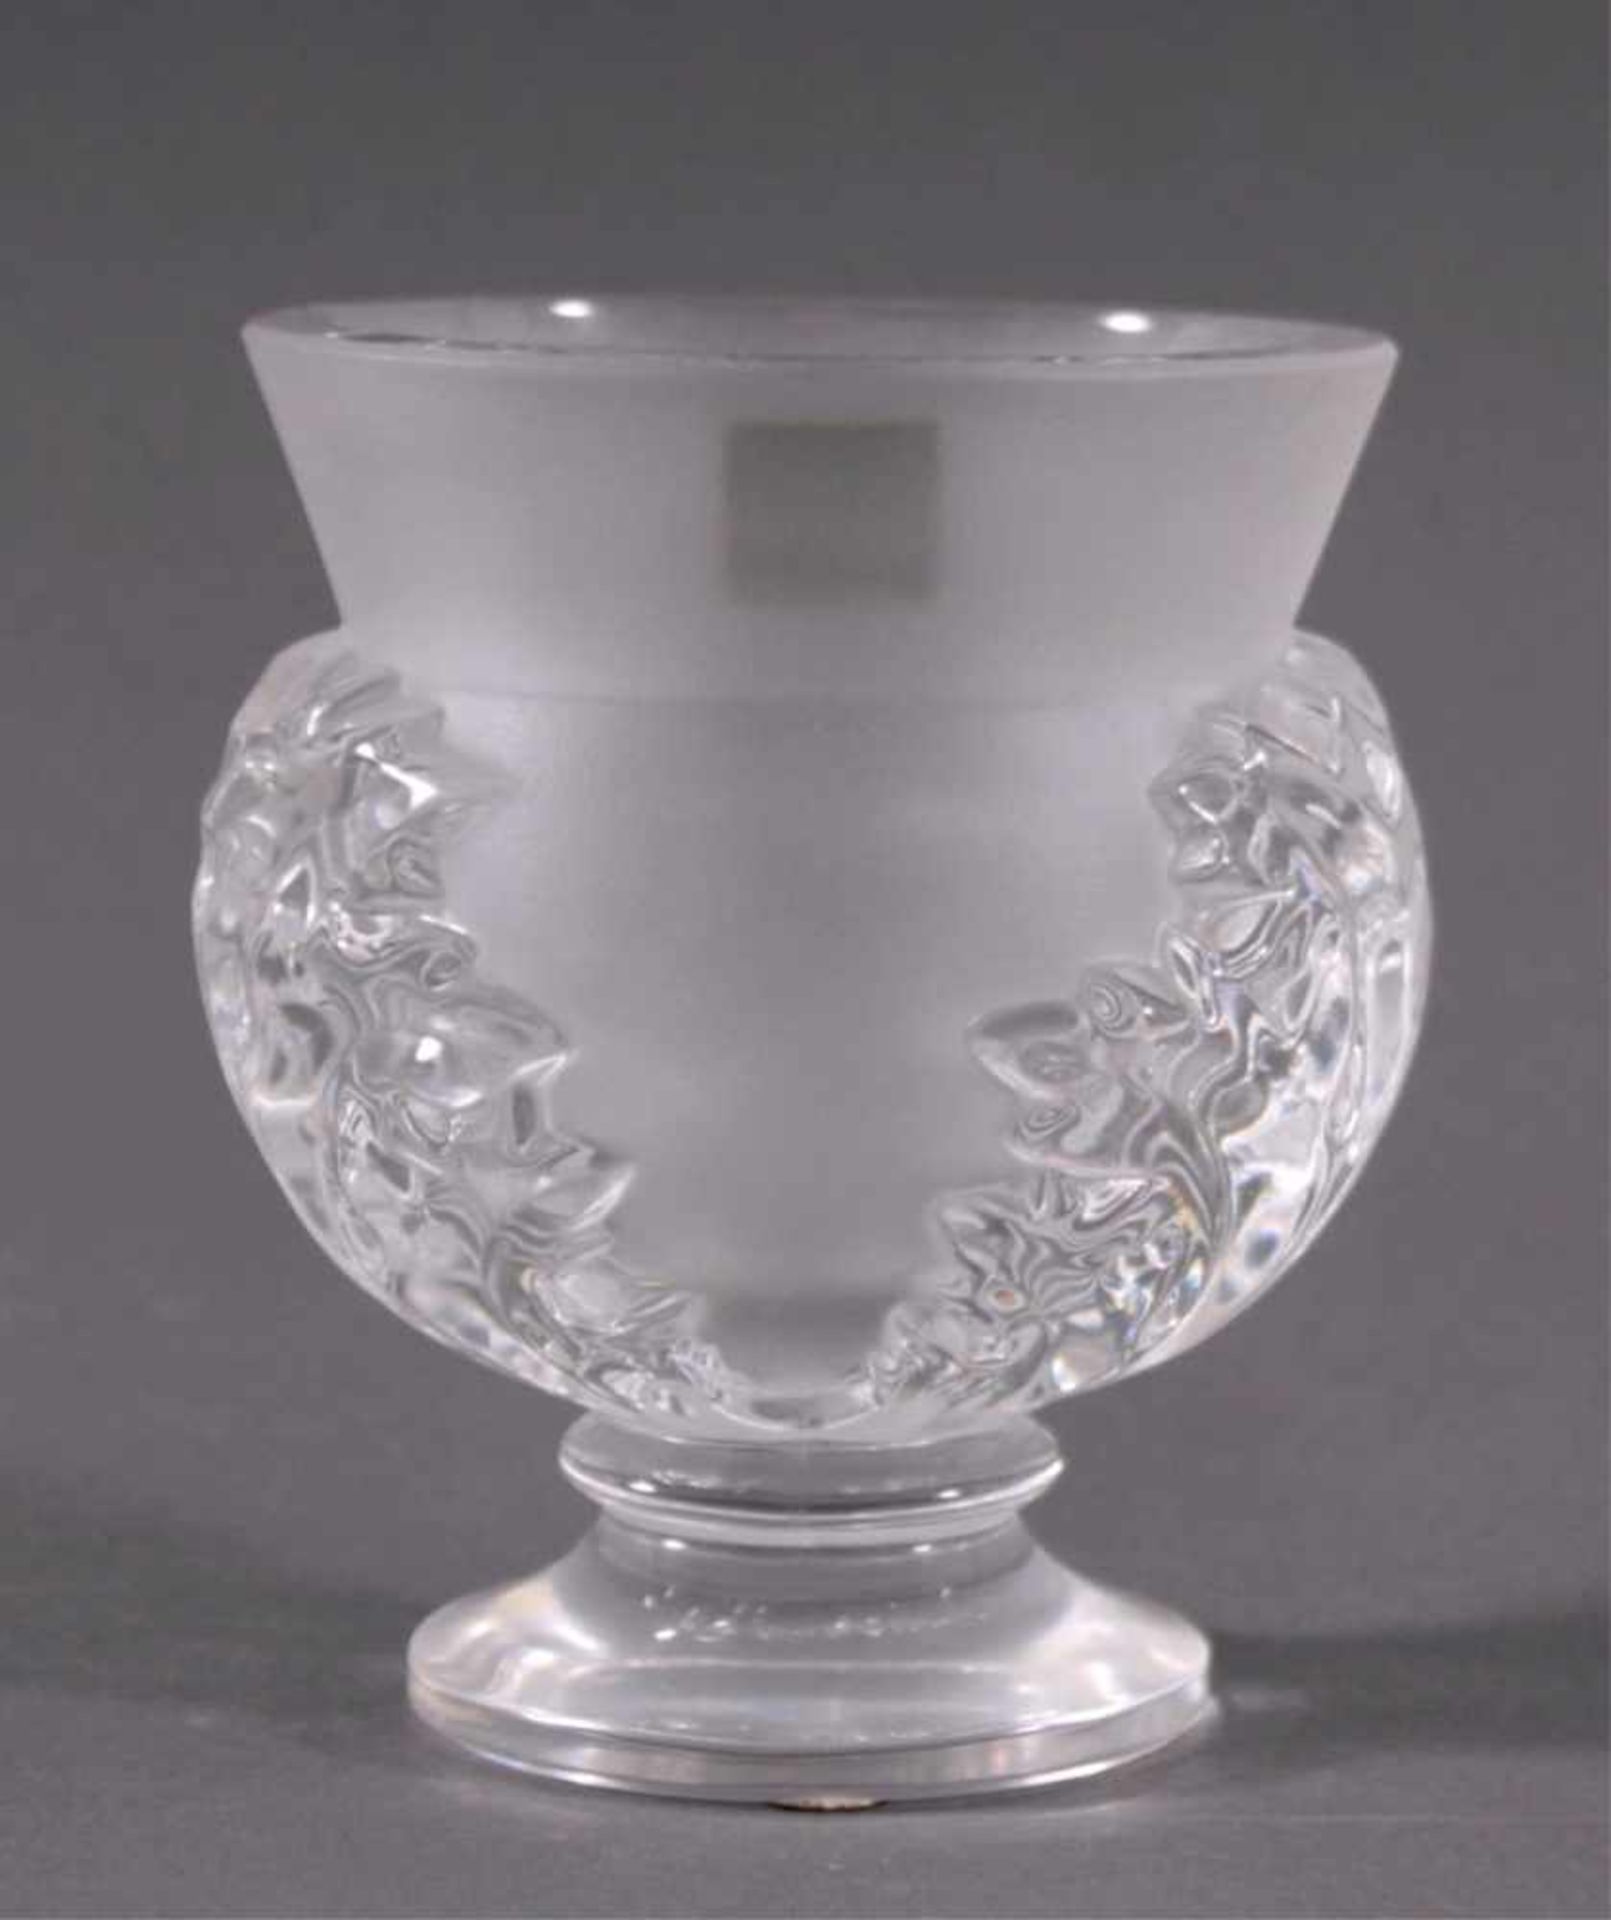 Vase, "Saint Cloud" - Lalique Paris Cristal20. Jahrhundert, farbloses Kristallglas, patiell - Bild 3 aus 7